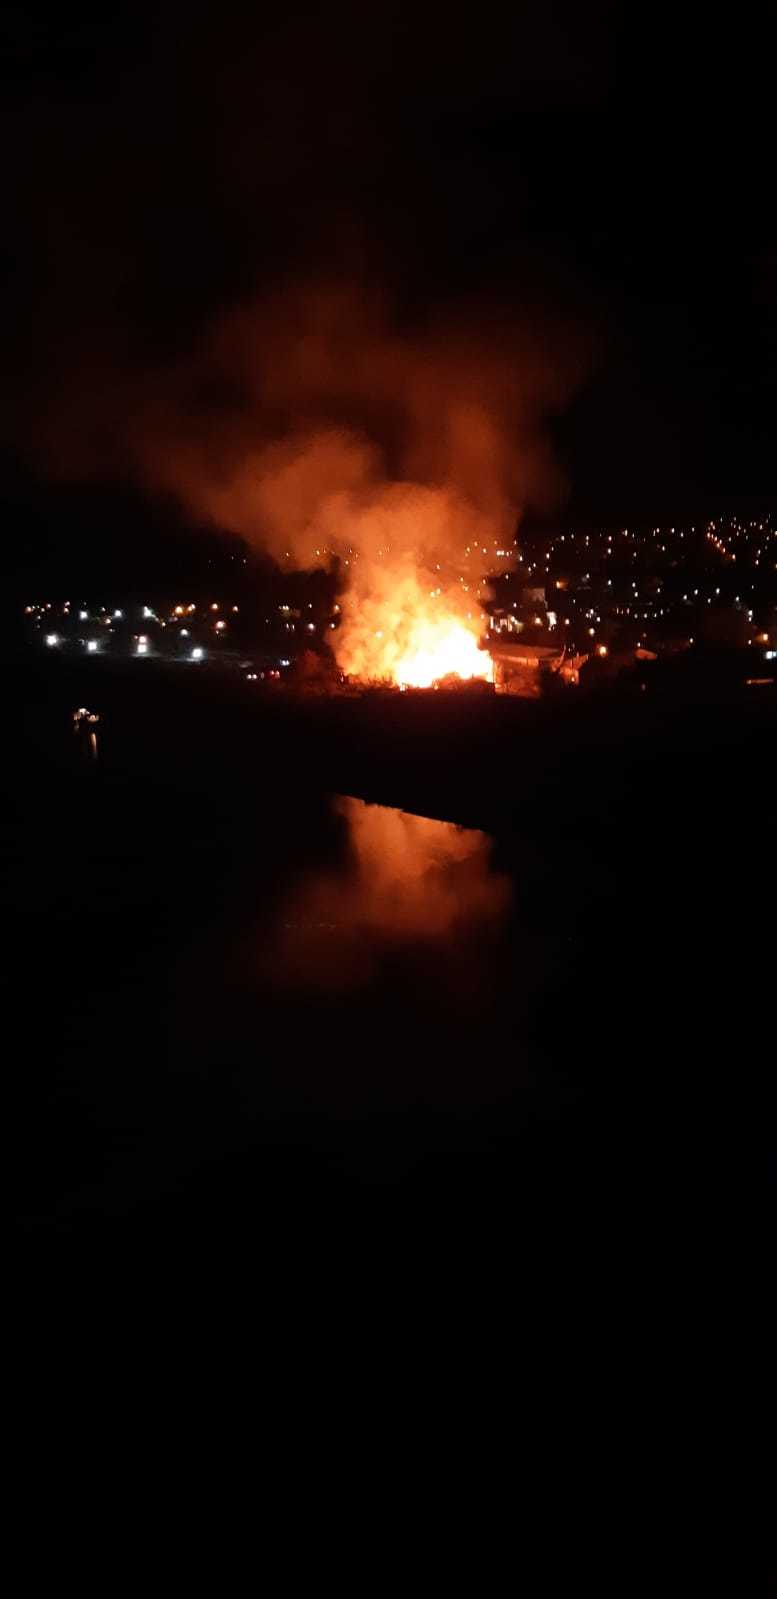 Constanţa: Incendiu violent în zona barăcilor din Cernavodă. O femeie a fost dusă la spital după ce a fost expusă la fum. FOTO, VIDEO